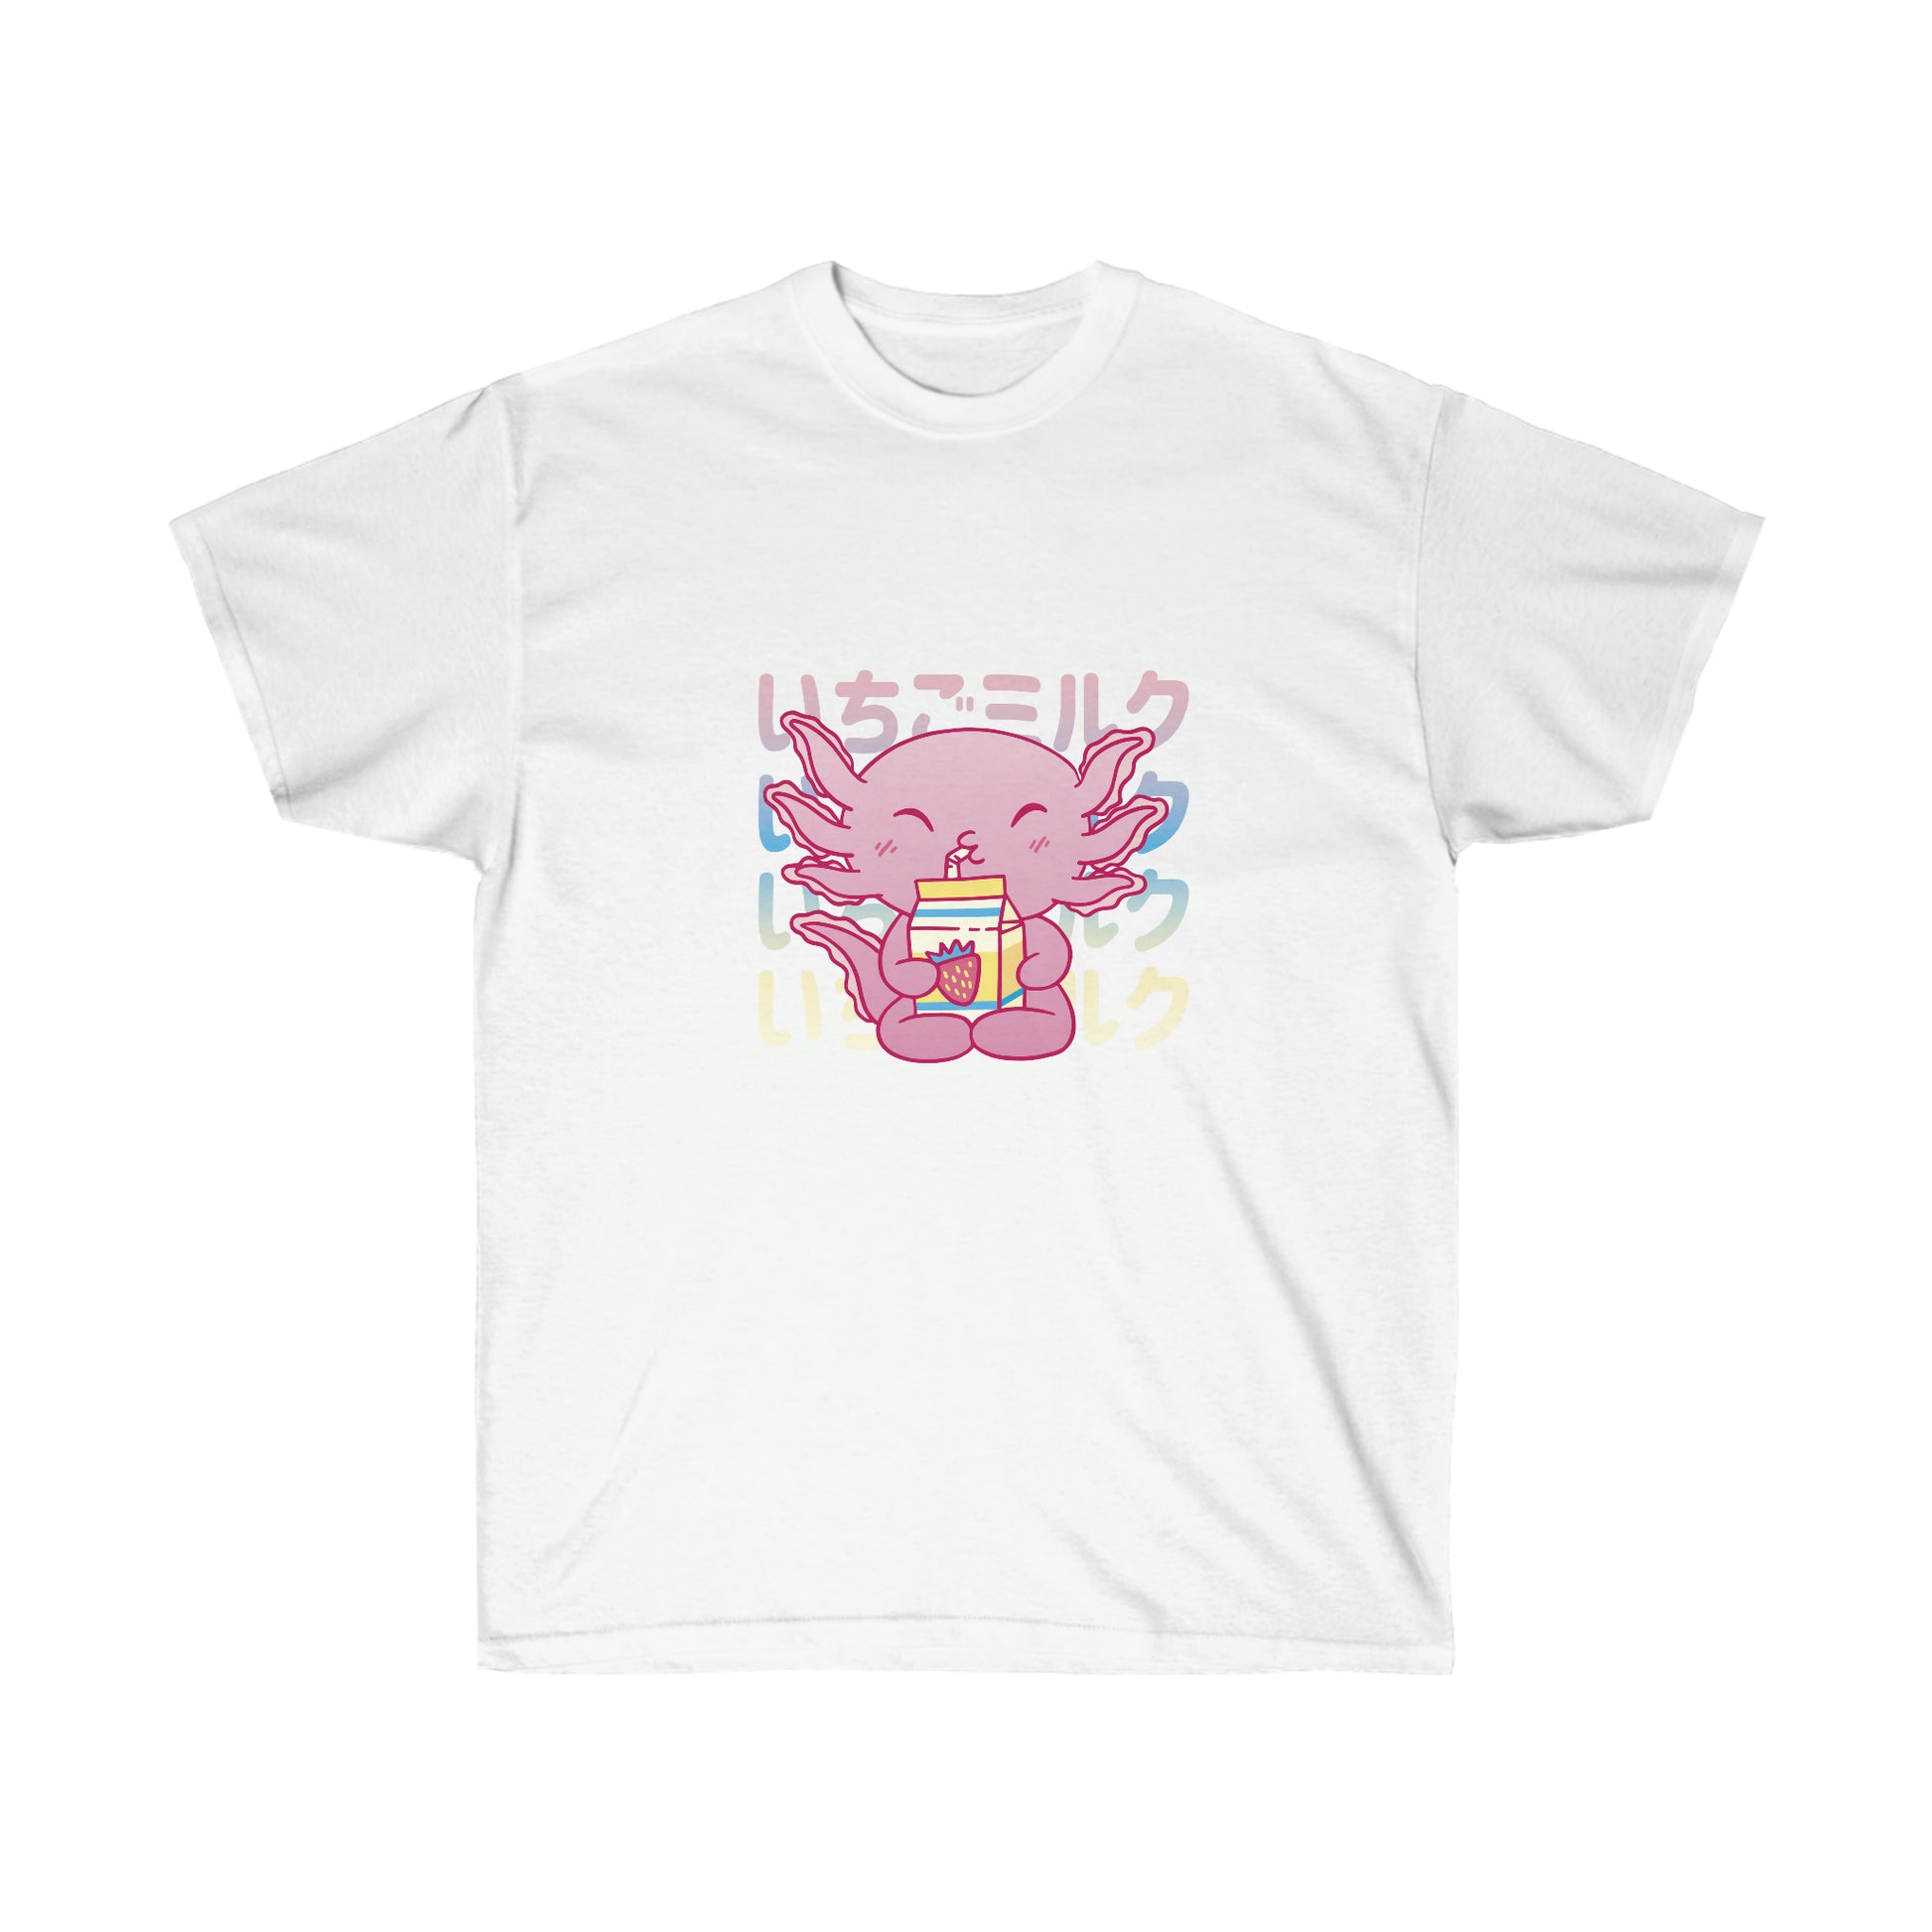 Kawaii Sweatshirt, Kawaii Clothing, Kawaii Clothes, Yami Kawaii, Pastel Kawaii Cute Strawberry Milk Axolotl Sweatshirt T-Shirt